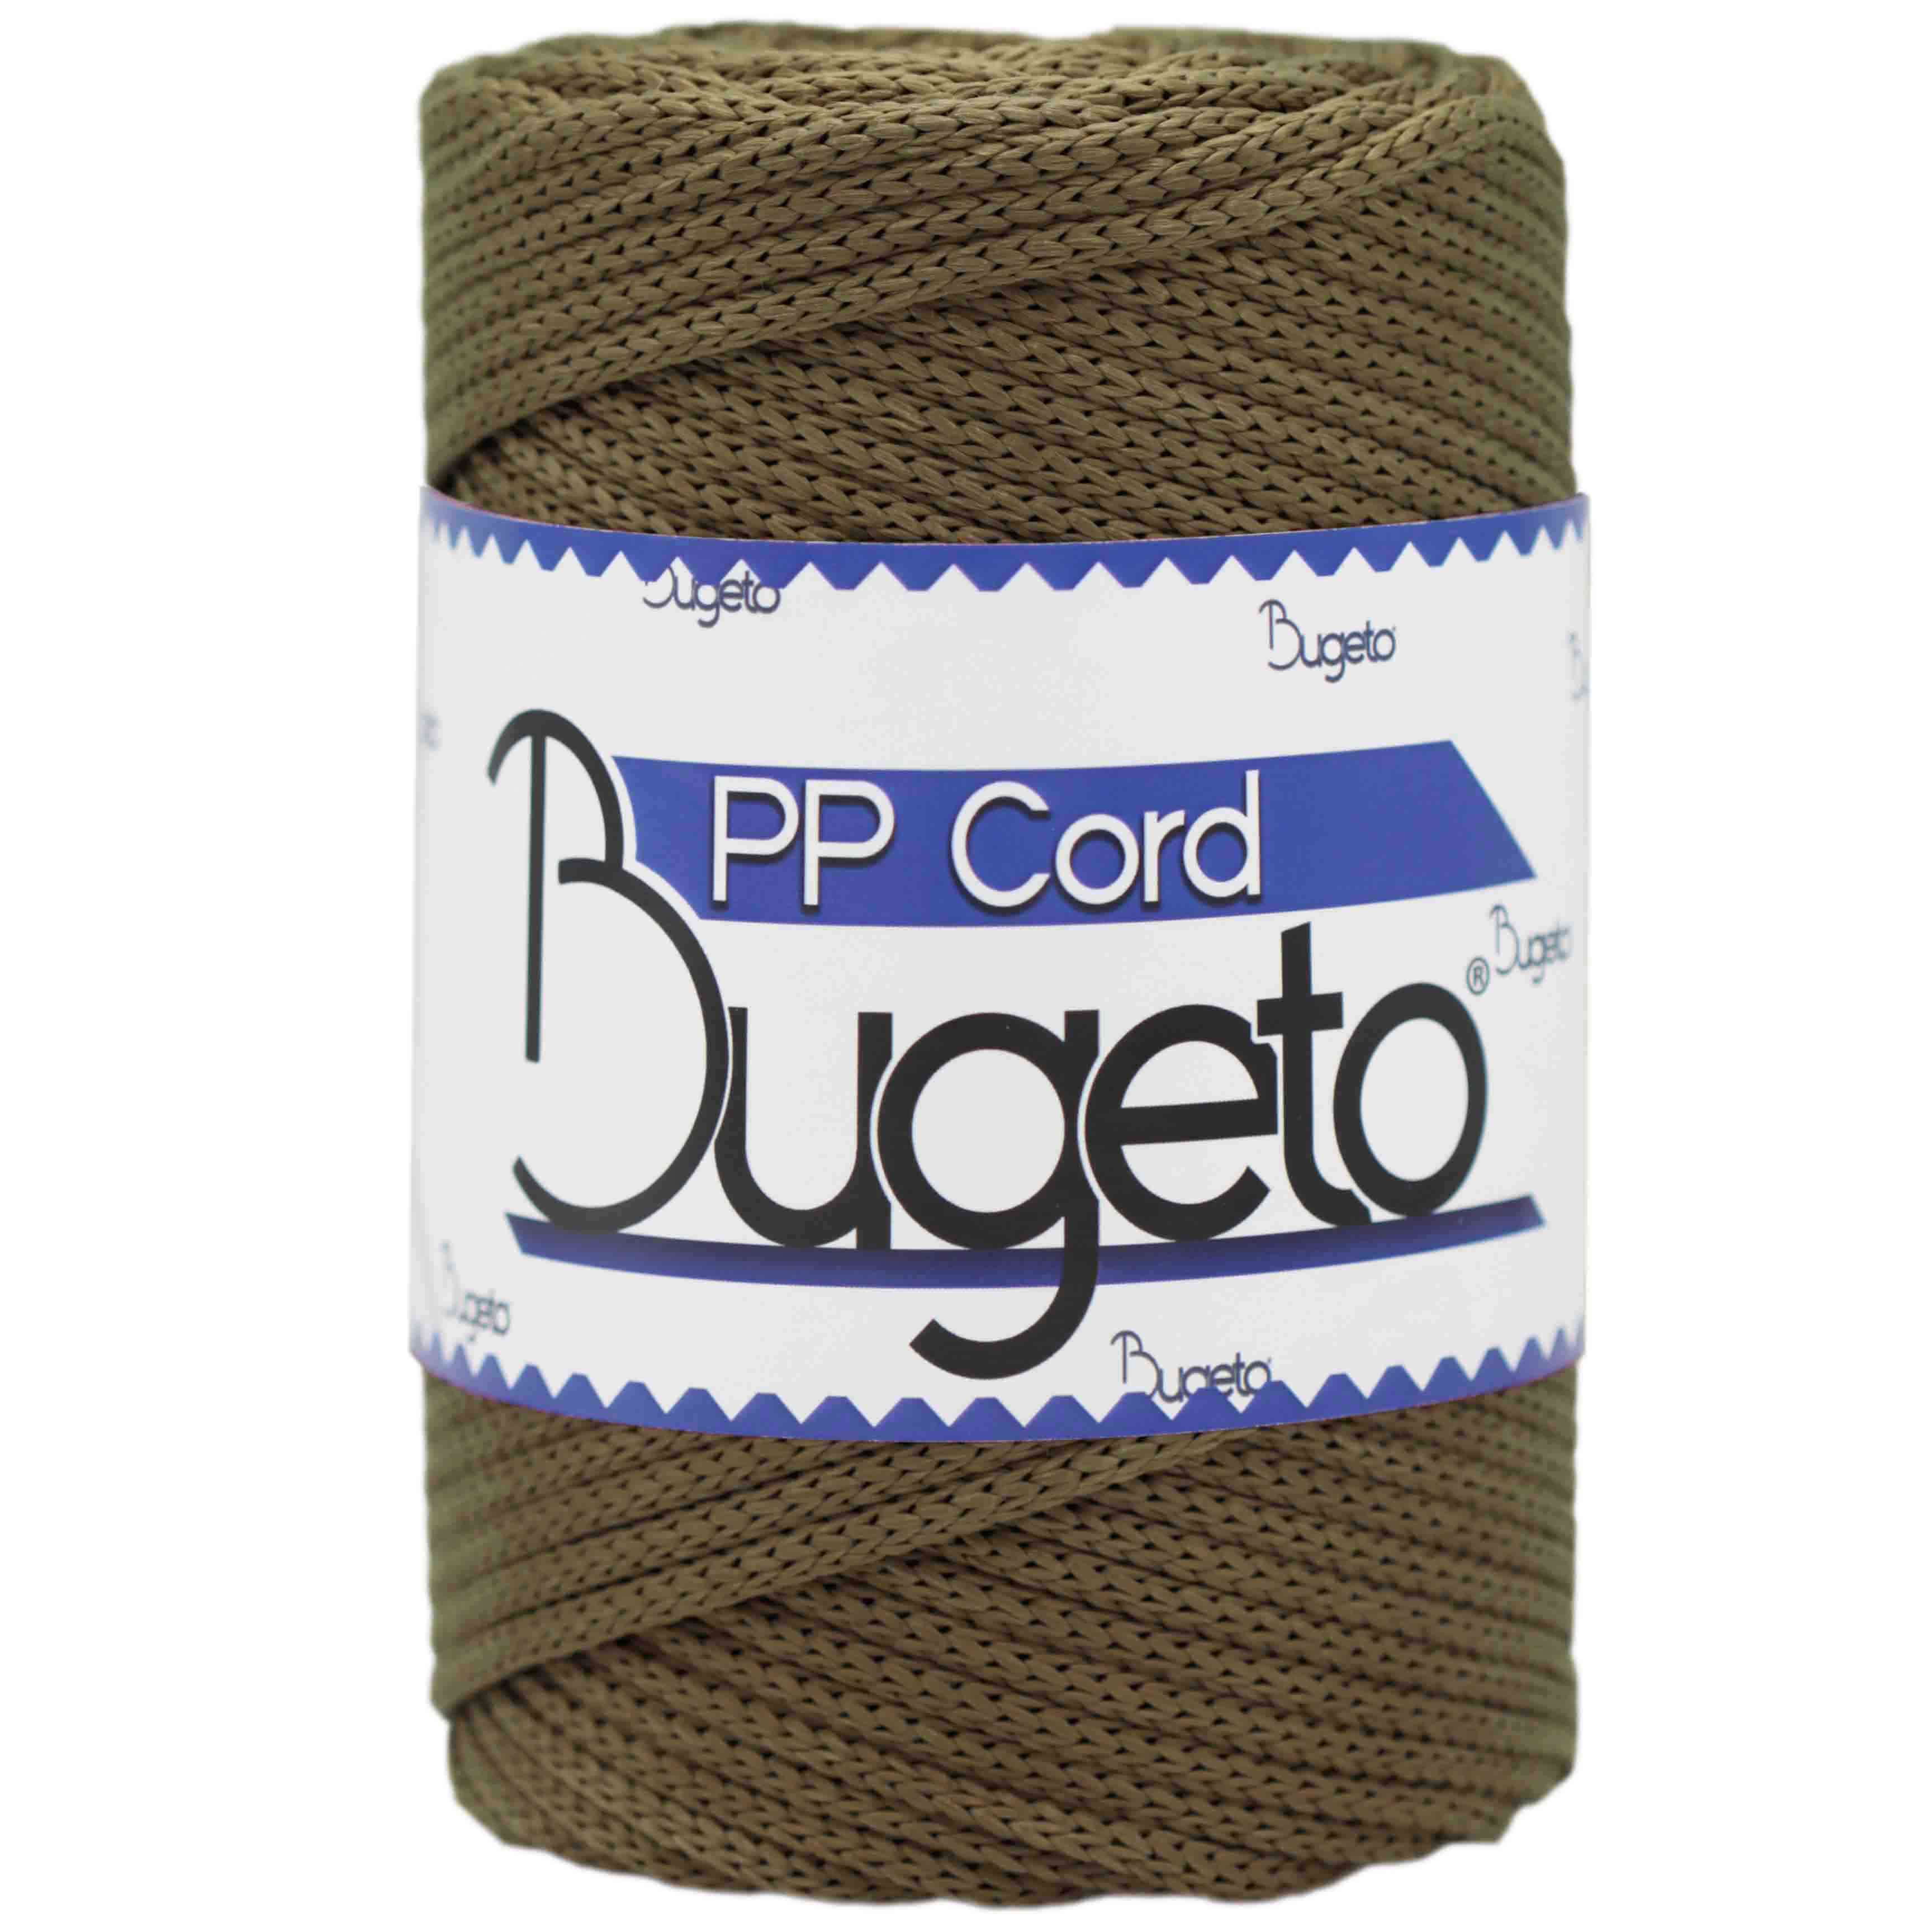 pp cord polyproplene yarn polyproplene cord yarns bugeto yarn